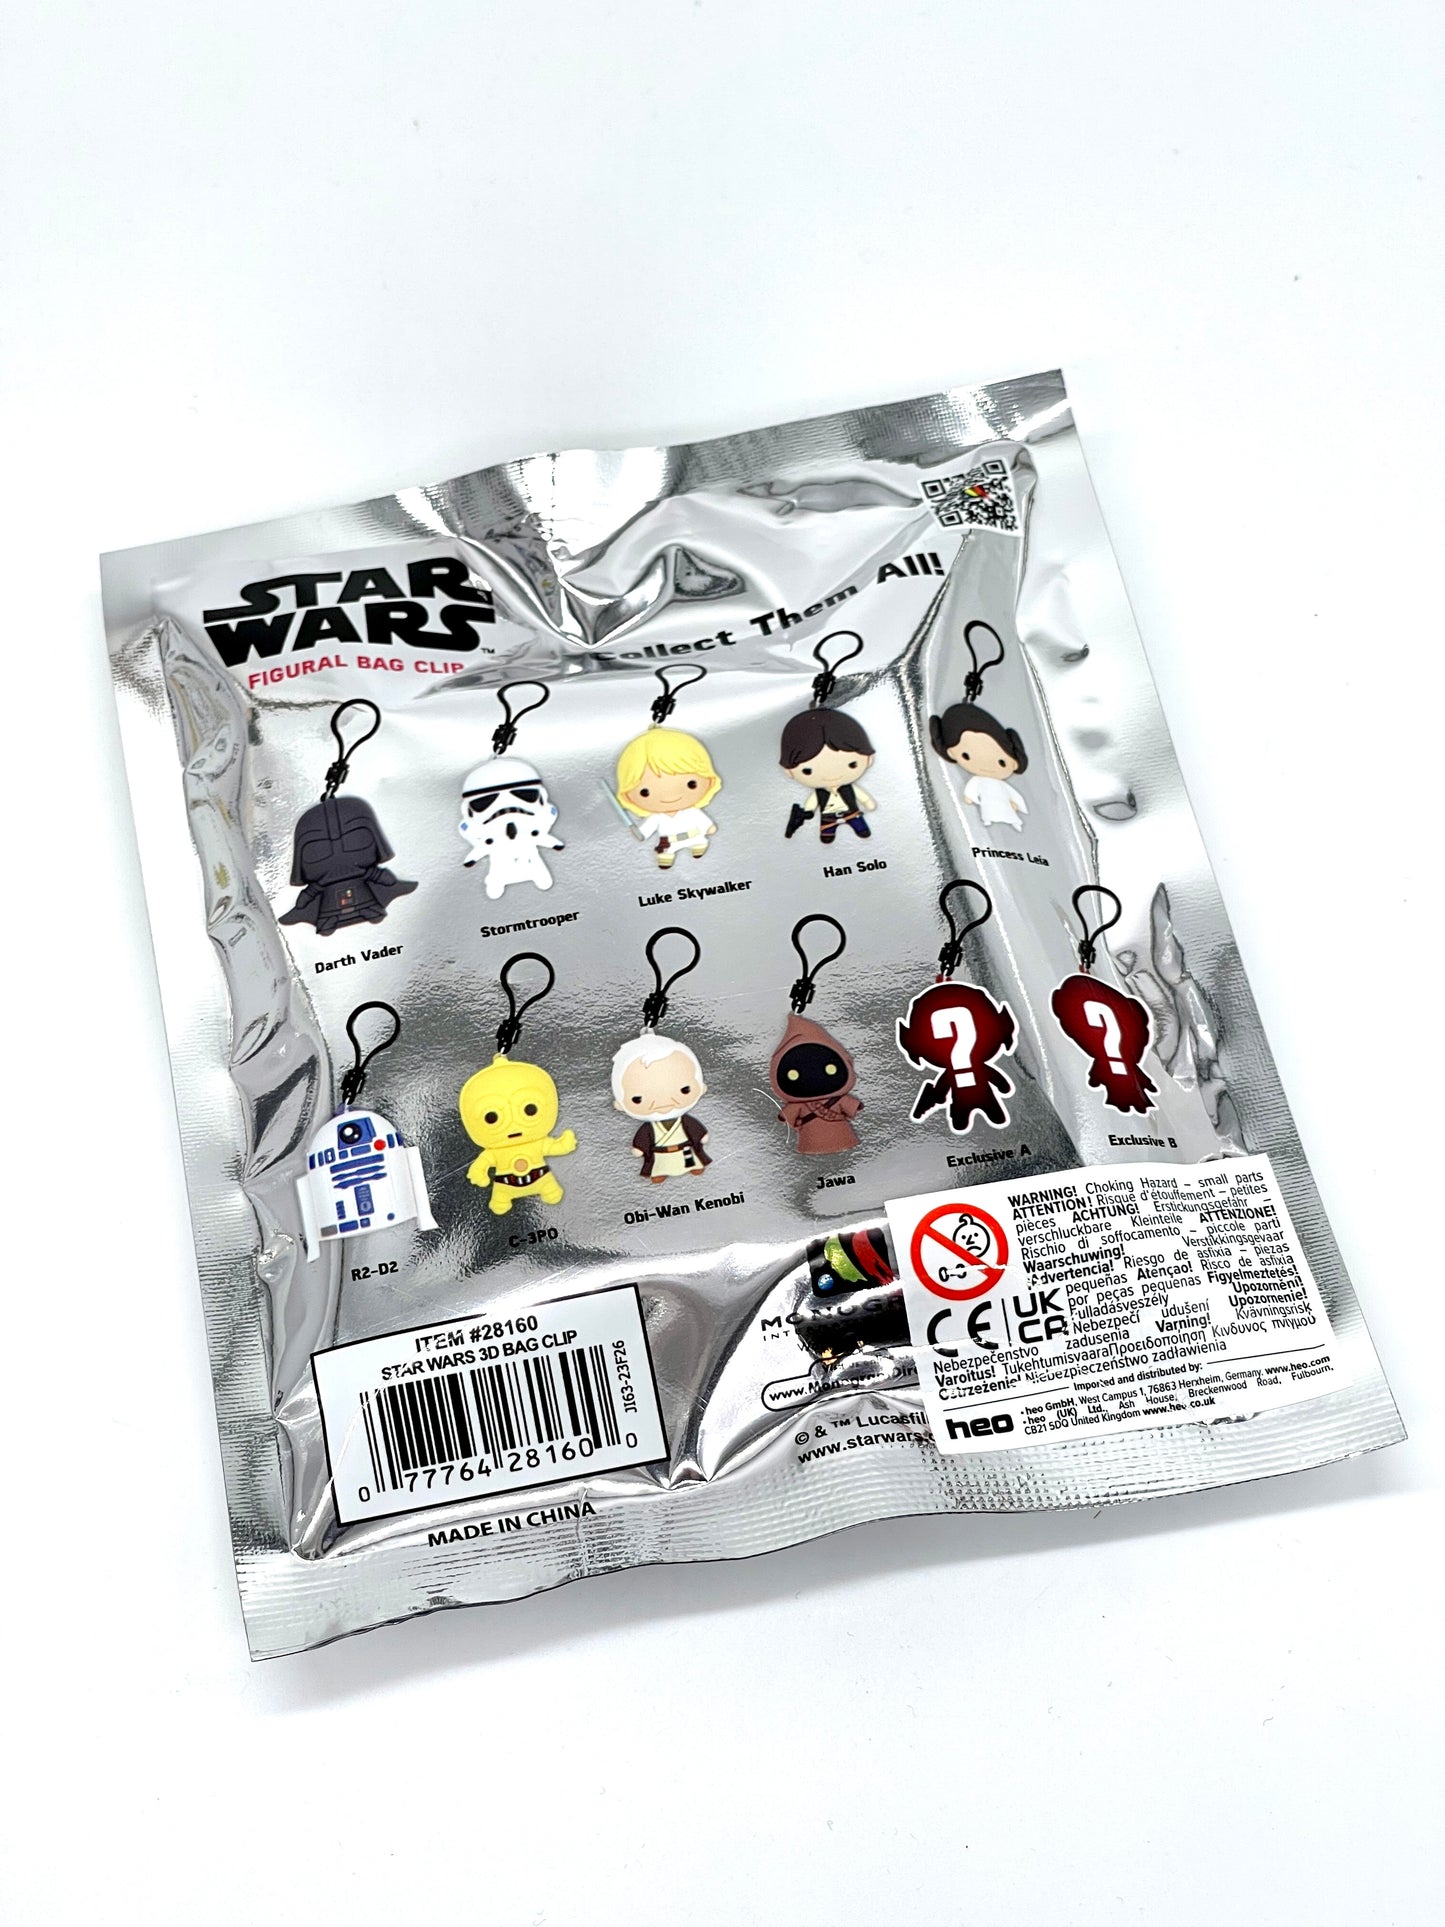 Star Wars 3D "Taschenanhänger" Figural Bag Clip Schlüsselanhänger Serie 1 (Monogram)